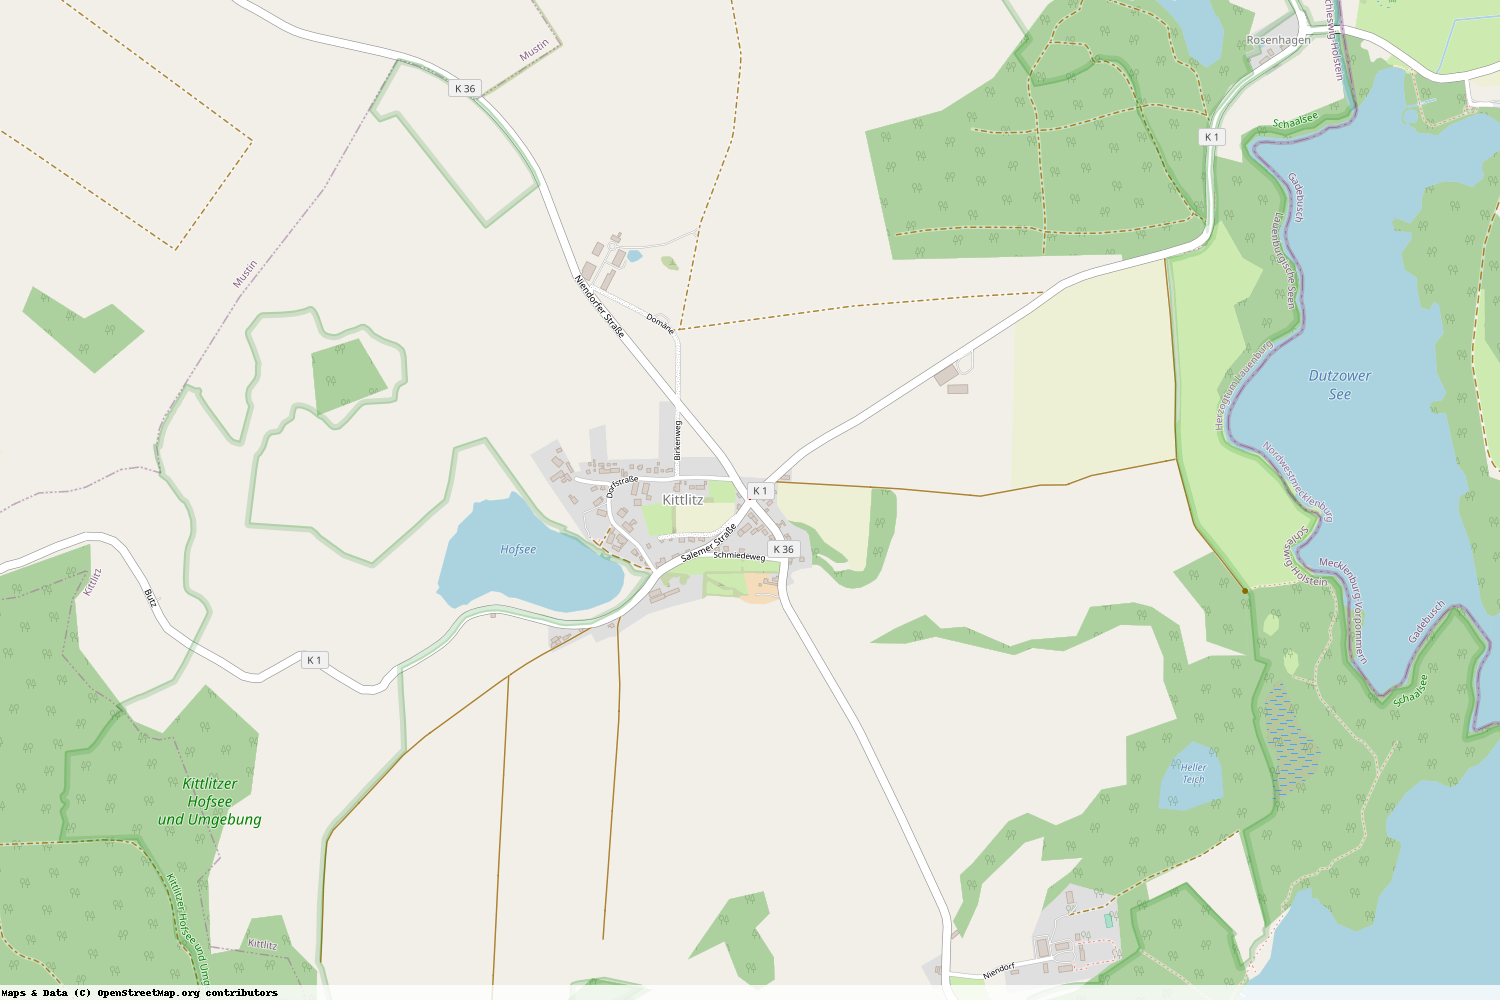 Ist gerade Stromausfall in Schleswig-Holstein - Herzogtum Lauenburg - Kittlitz?